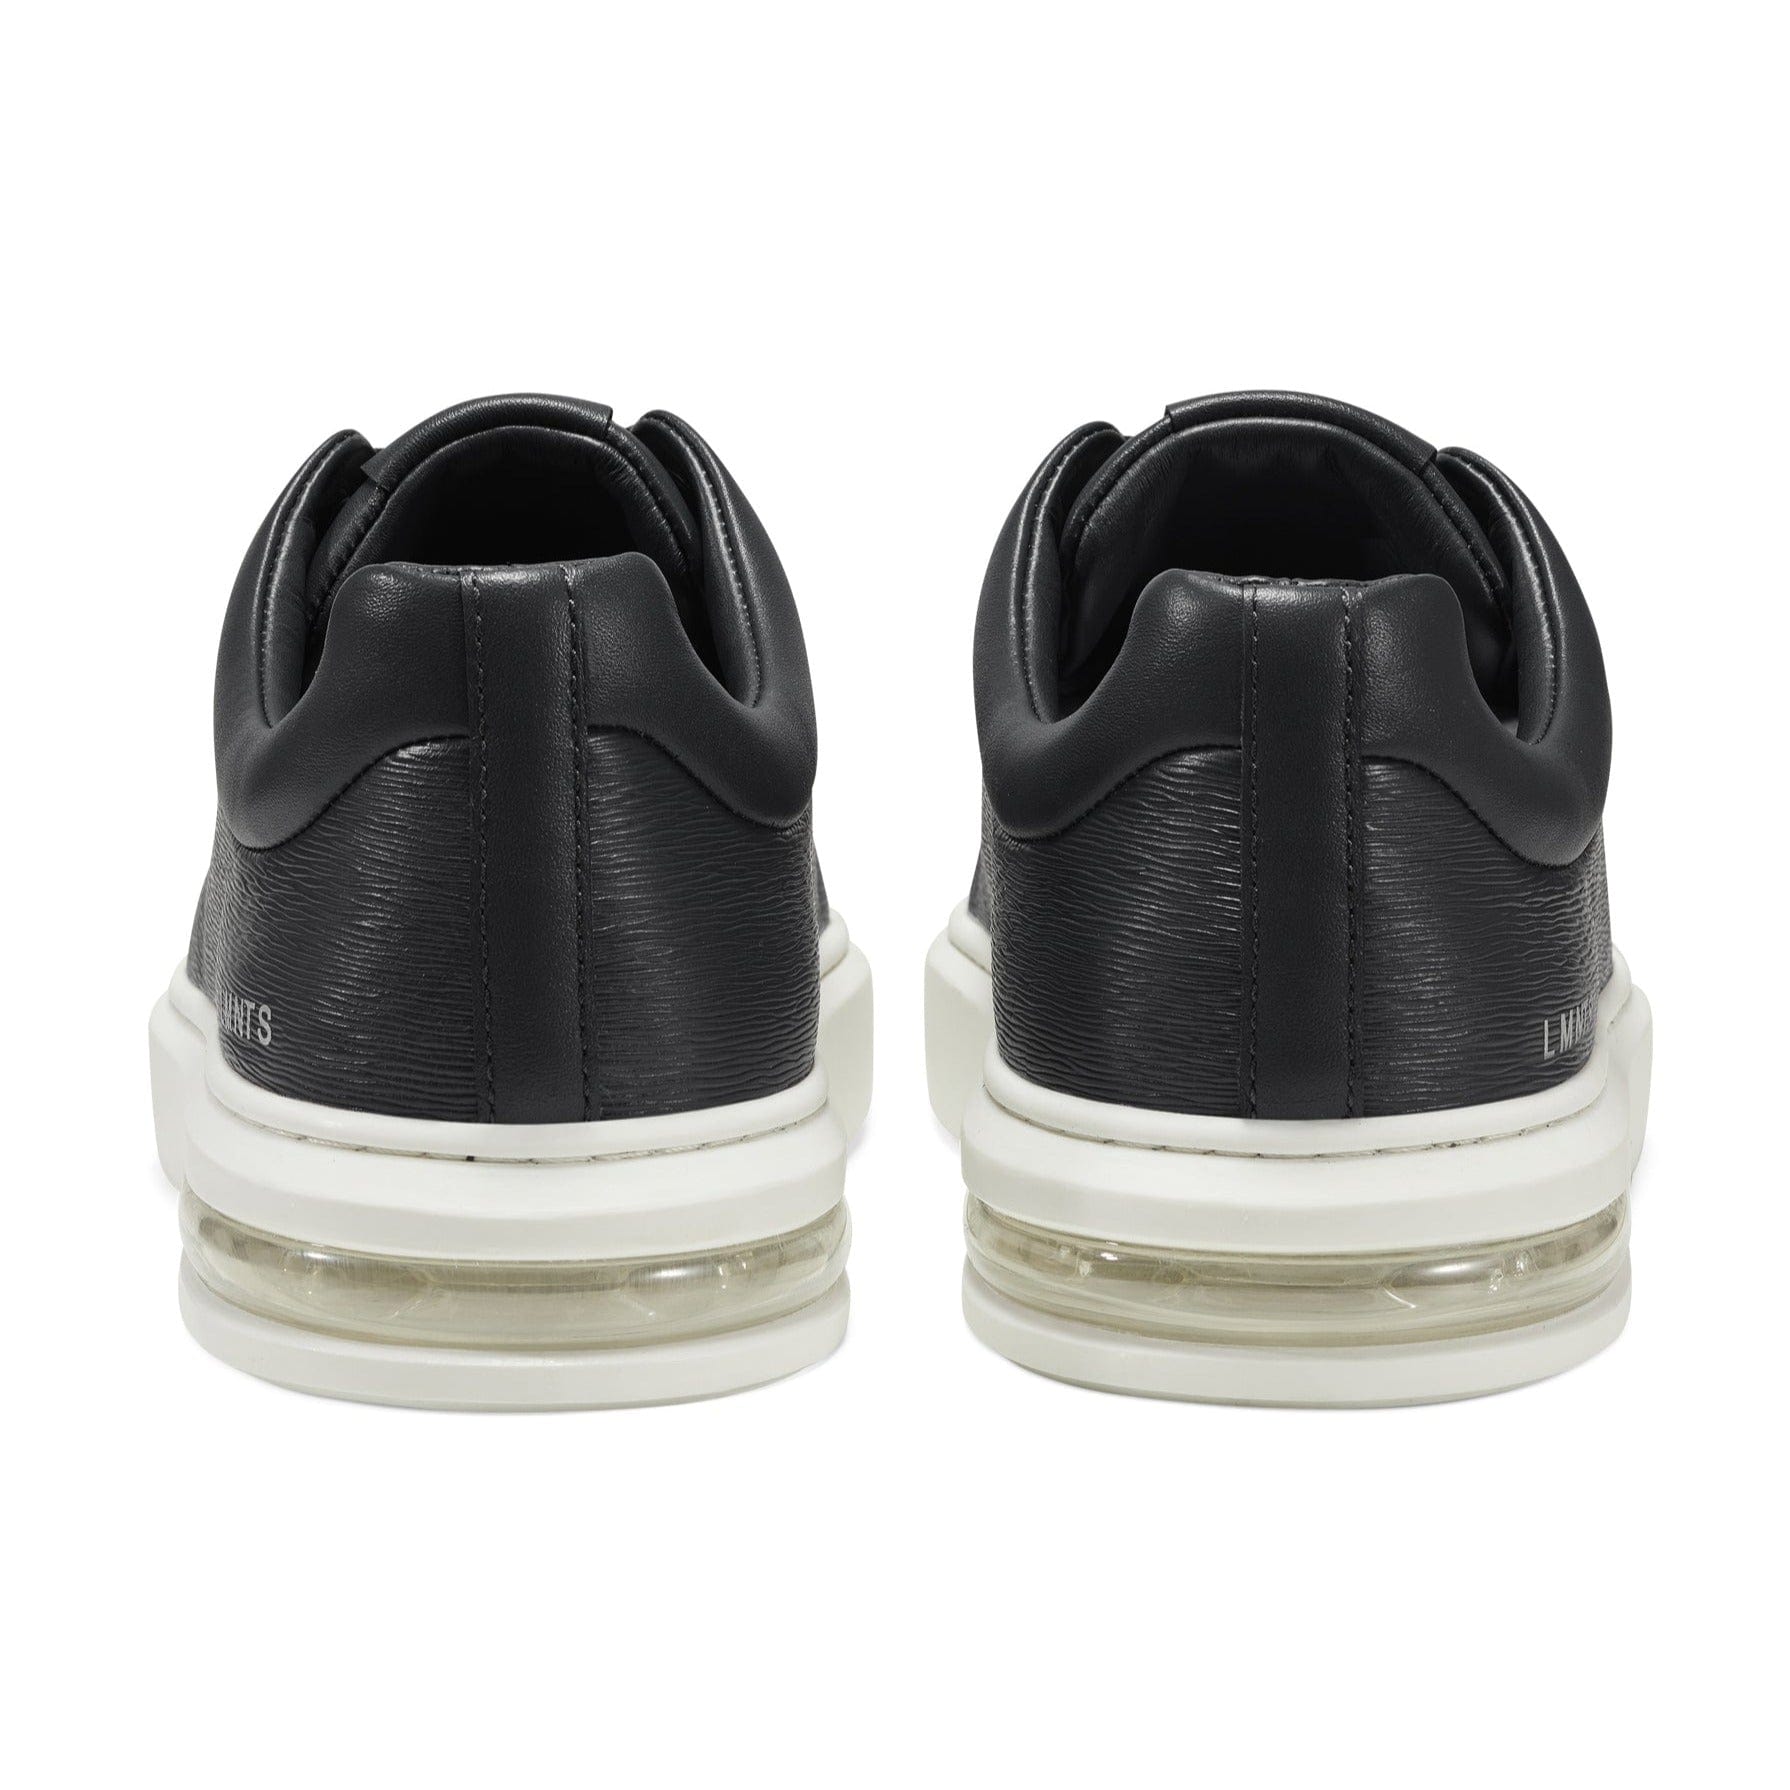 LMNTS Footwear Lunar Low Woodgrain - Black / White